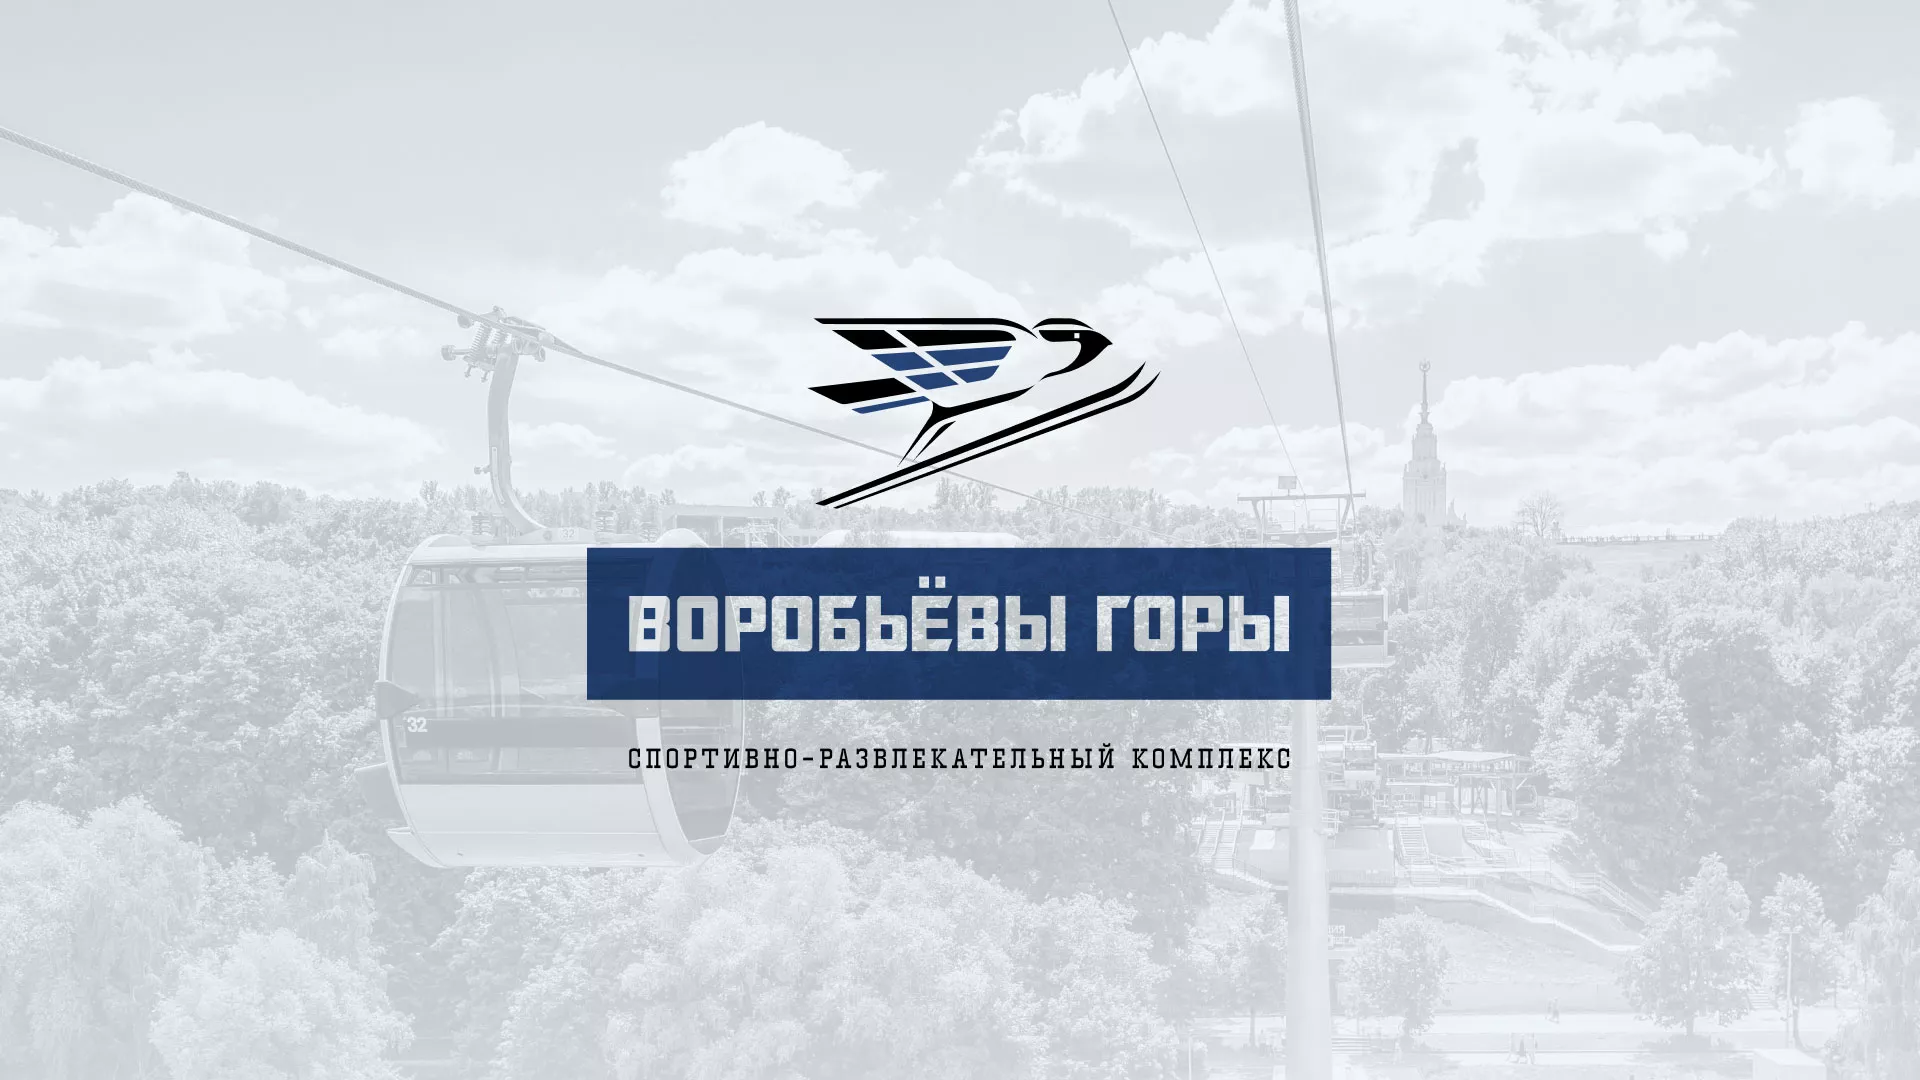 Разработка сайта в Сафоново для спортивно-развлекательного комплекса «Воробьёвы горы»